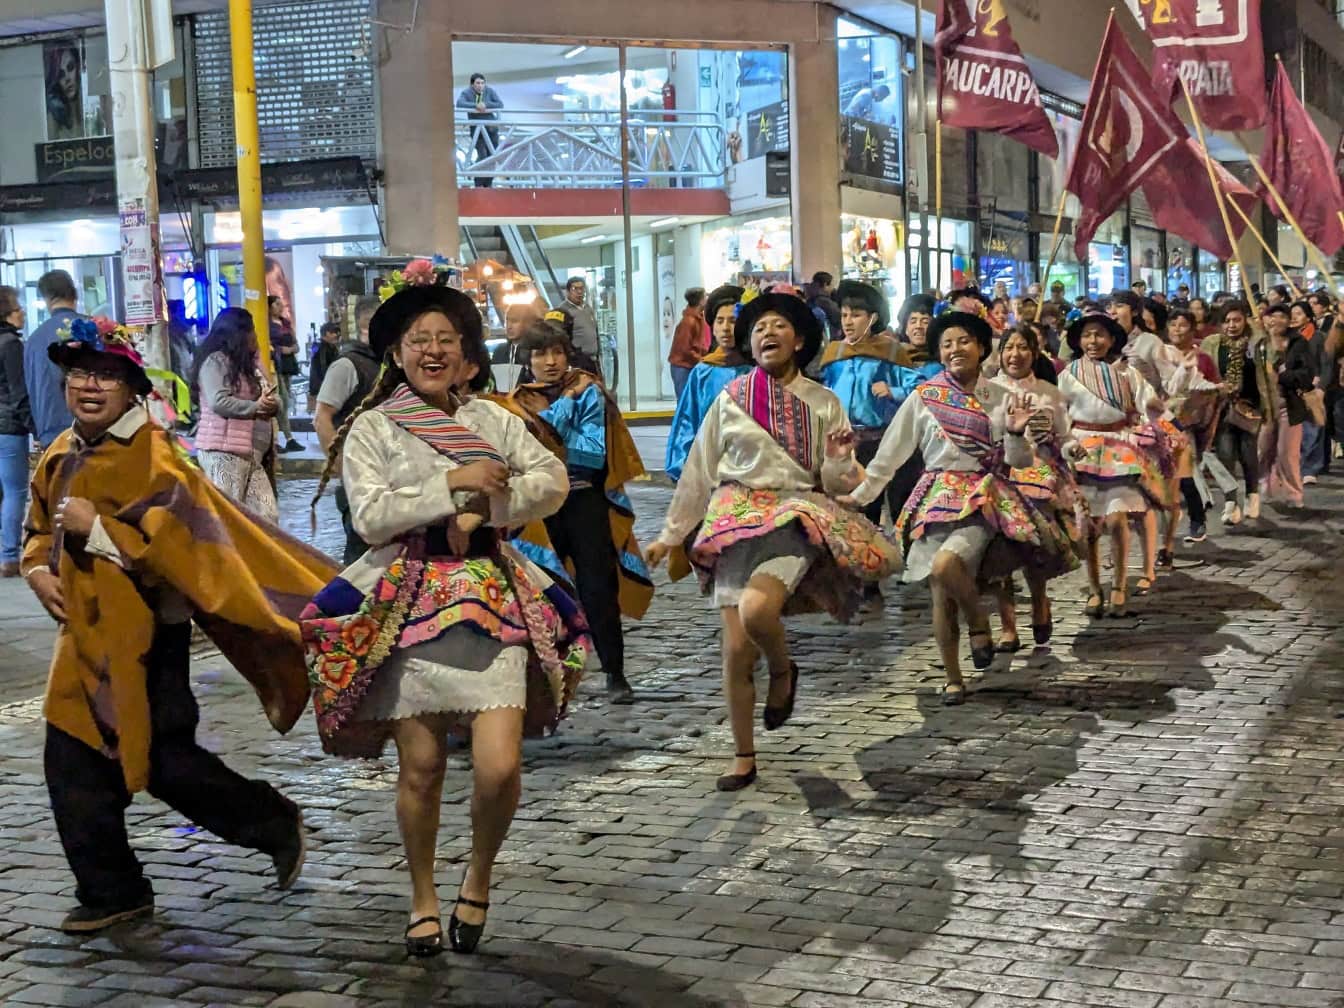 Des personnes en vêtements folkloriques traditionnels péruviens dansent dans une rue lors d’un festival de rue